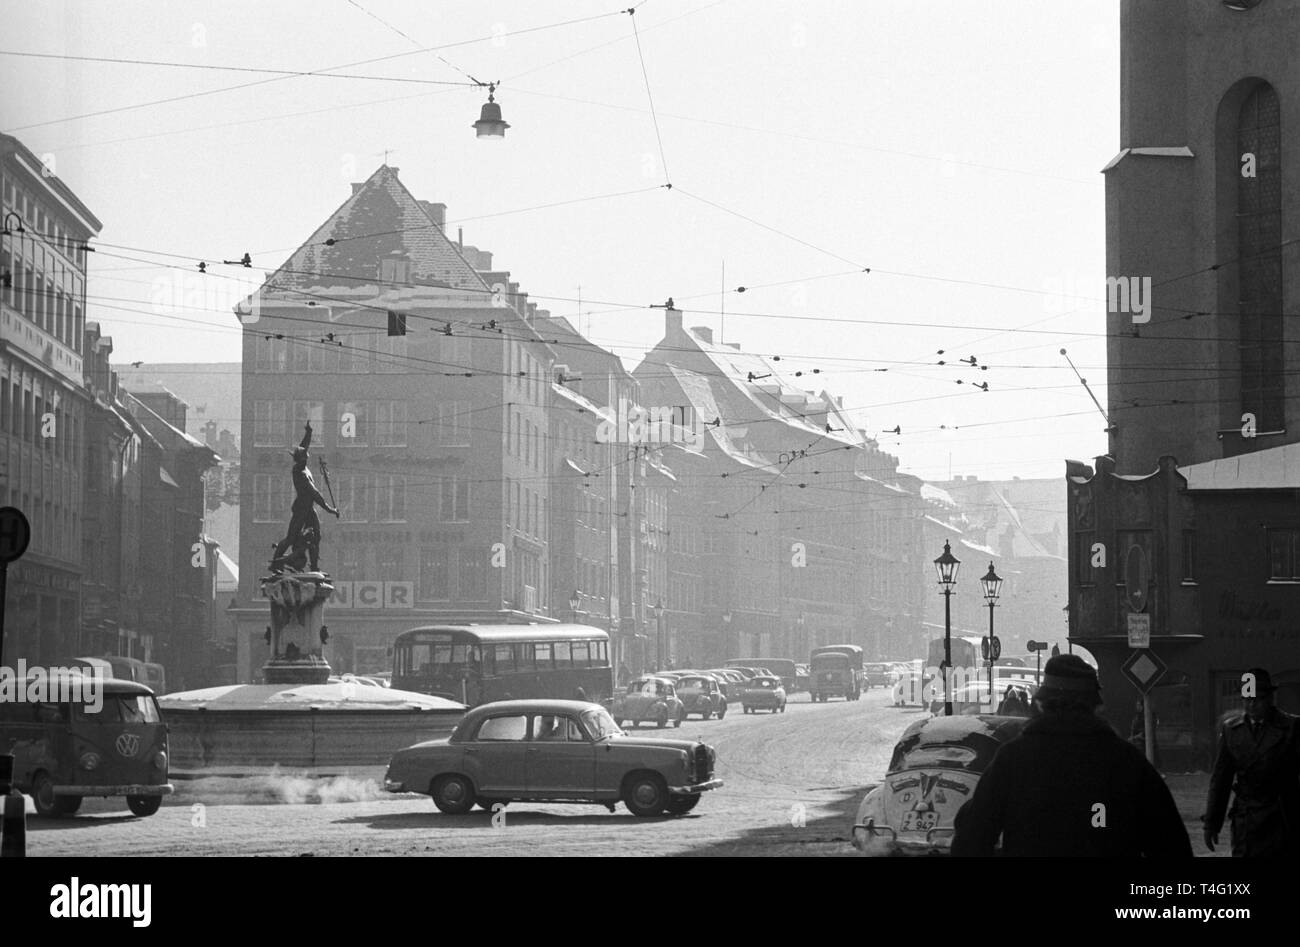 Blick auf die schneebedeckte Maximiliansstrasse in Augsburg (undatiert Archiv Bild vom Januar 1963). | Verwendung weltweit Stockfoto